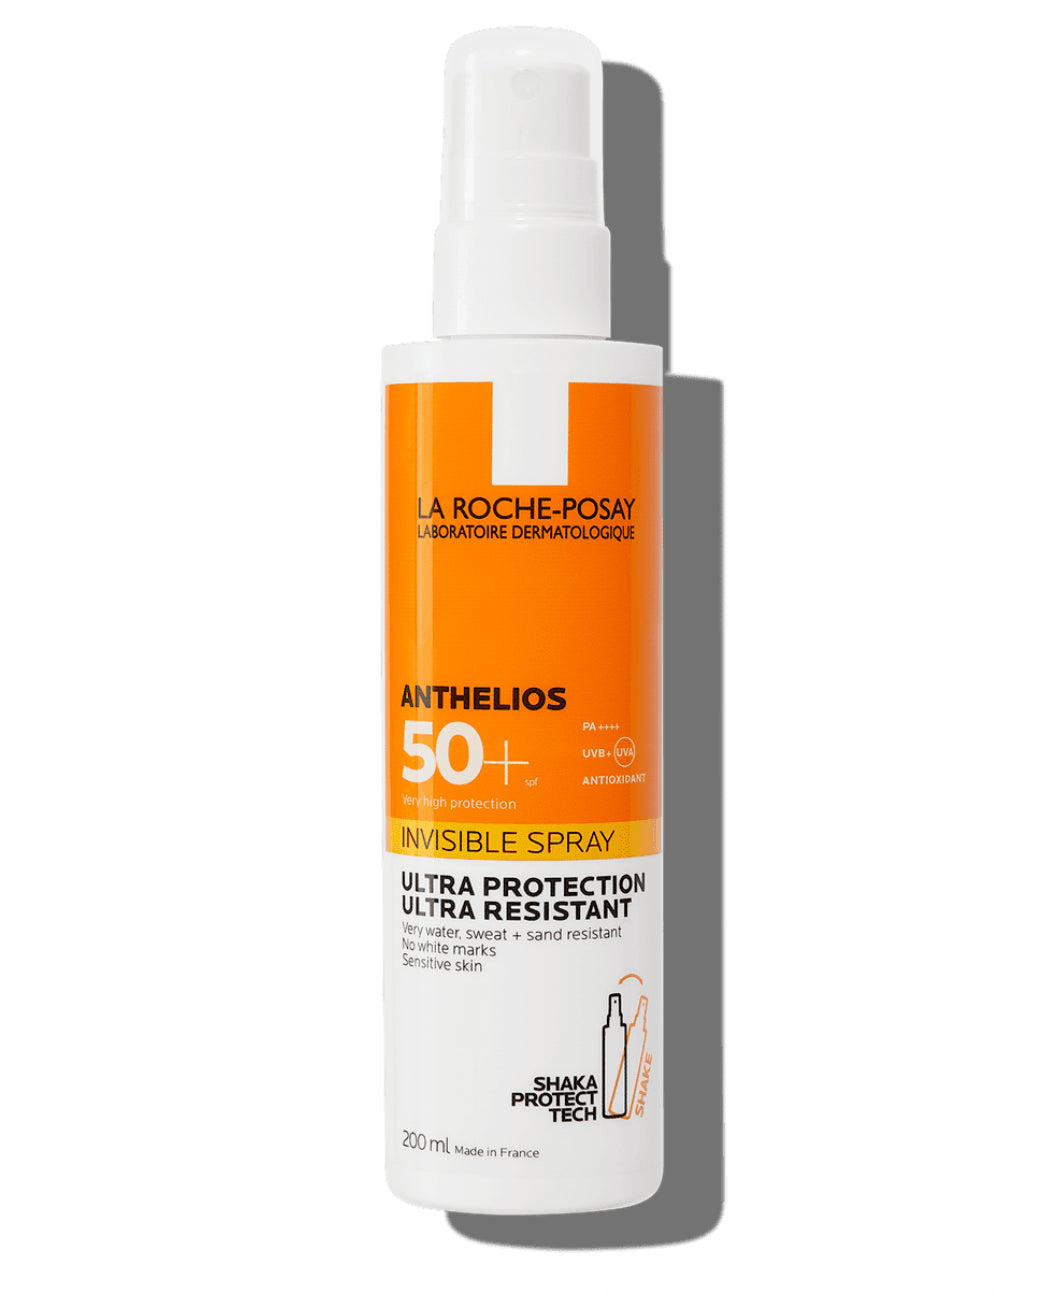 La Roche Posay Anthelios Invisible Spray SPF 50+ 200ML